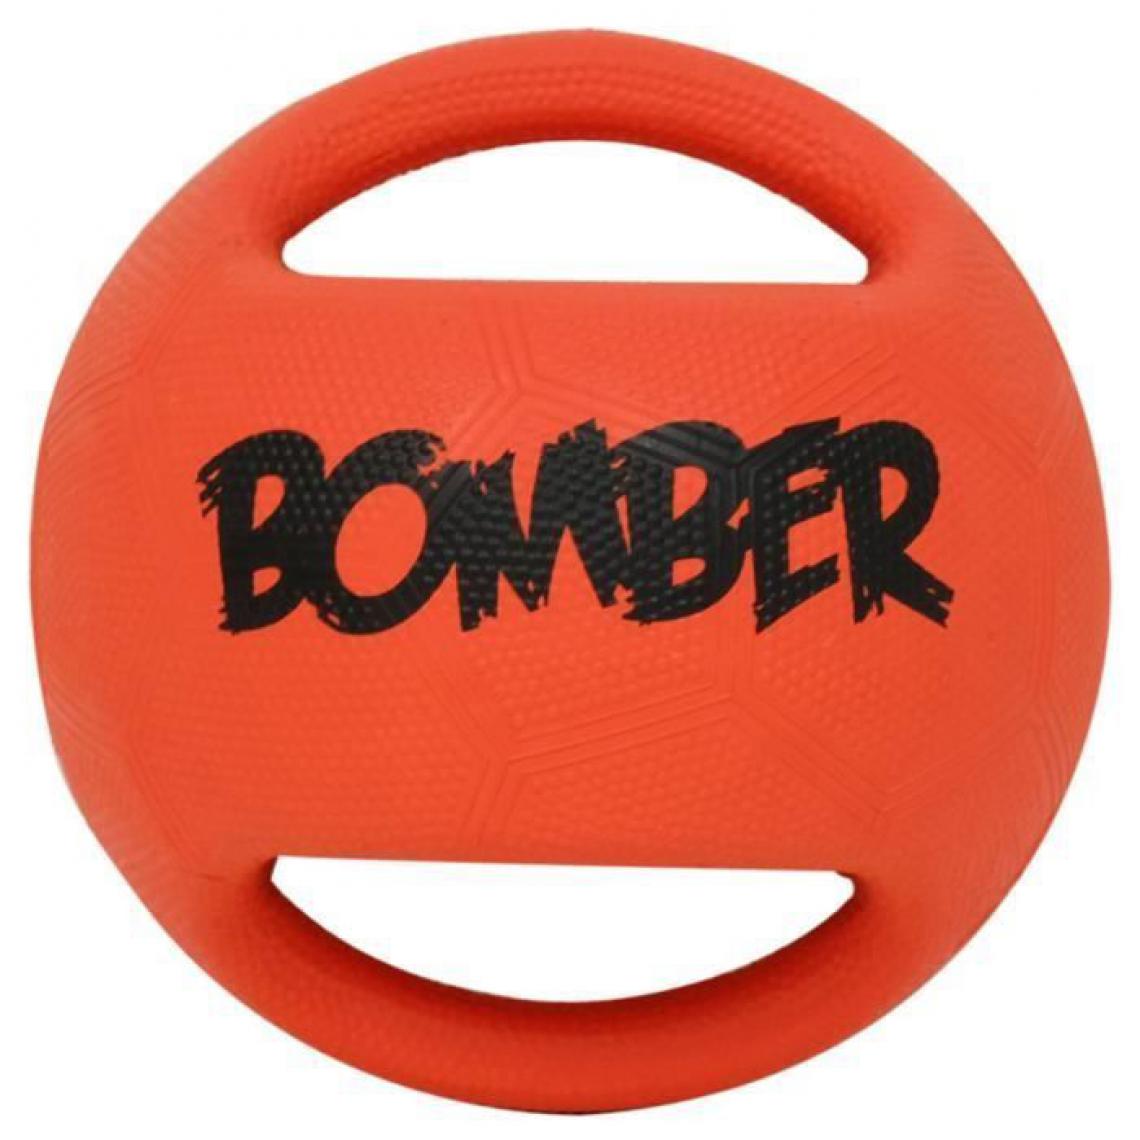 Bomber - ZEUS Ballon Bomber 15 cm - Orange et noir - Pour chien - Jouet pour chien